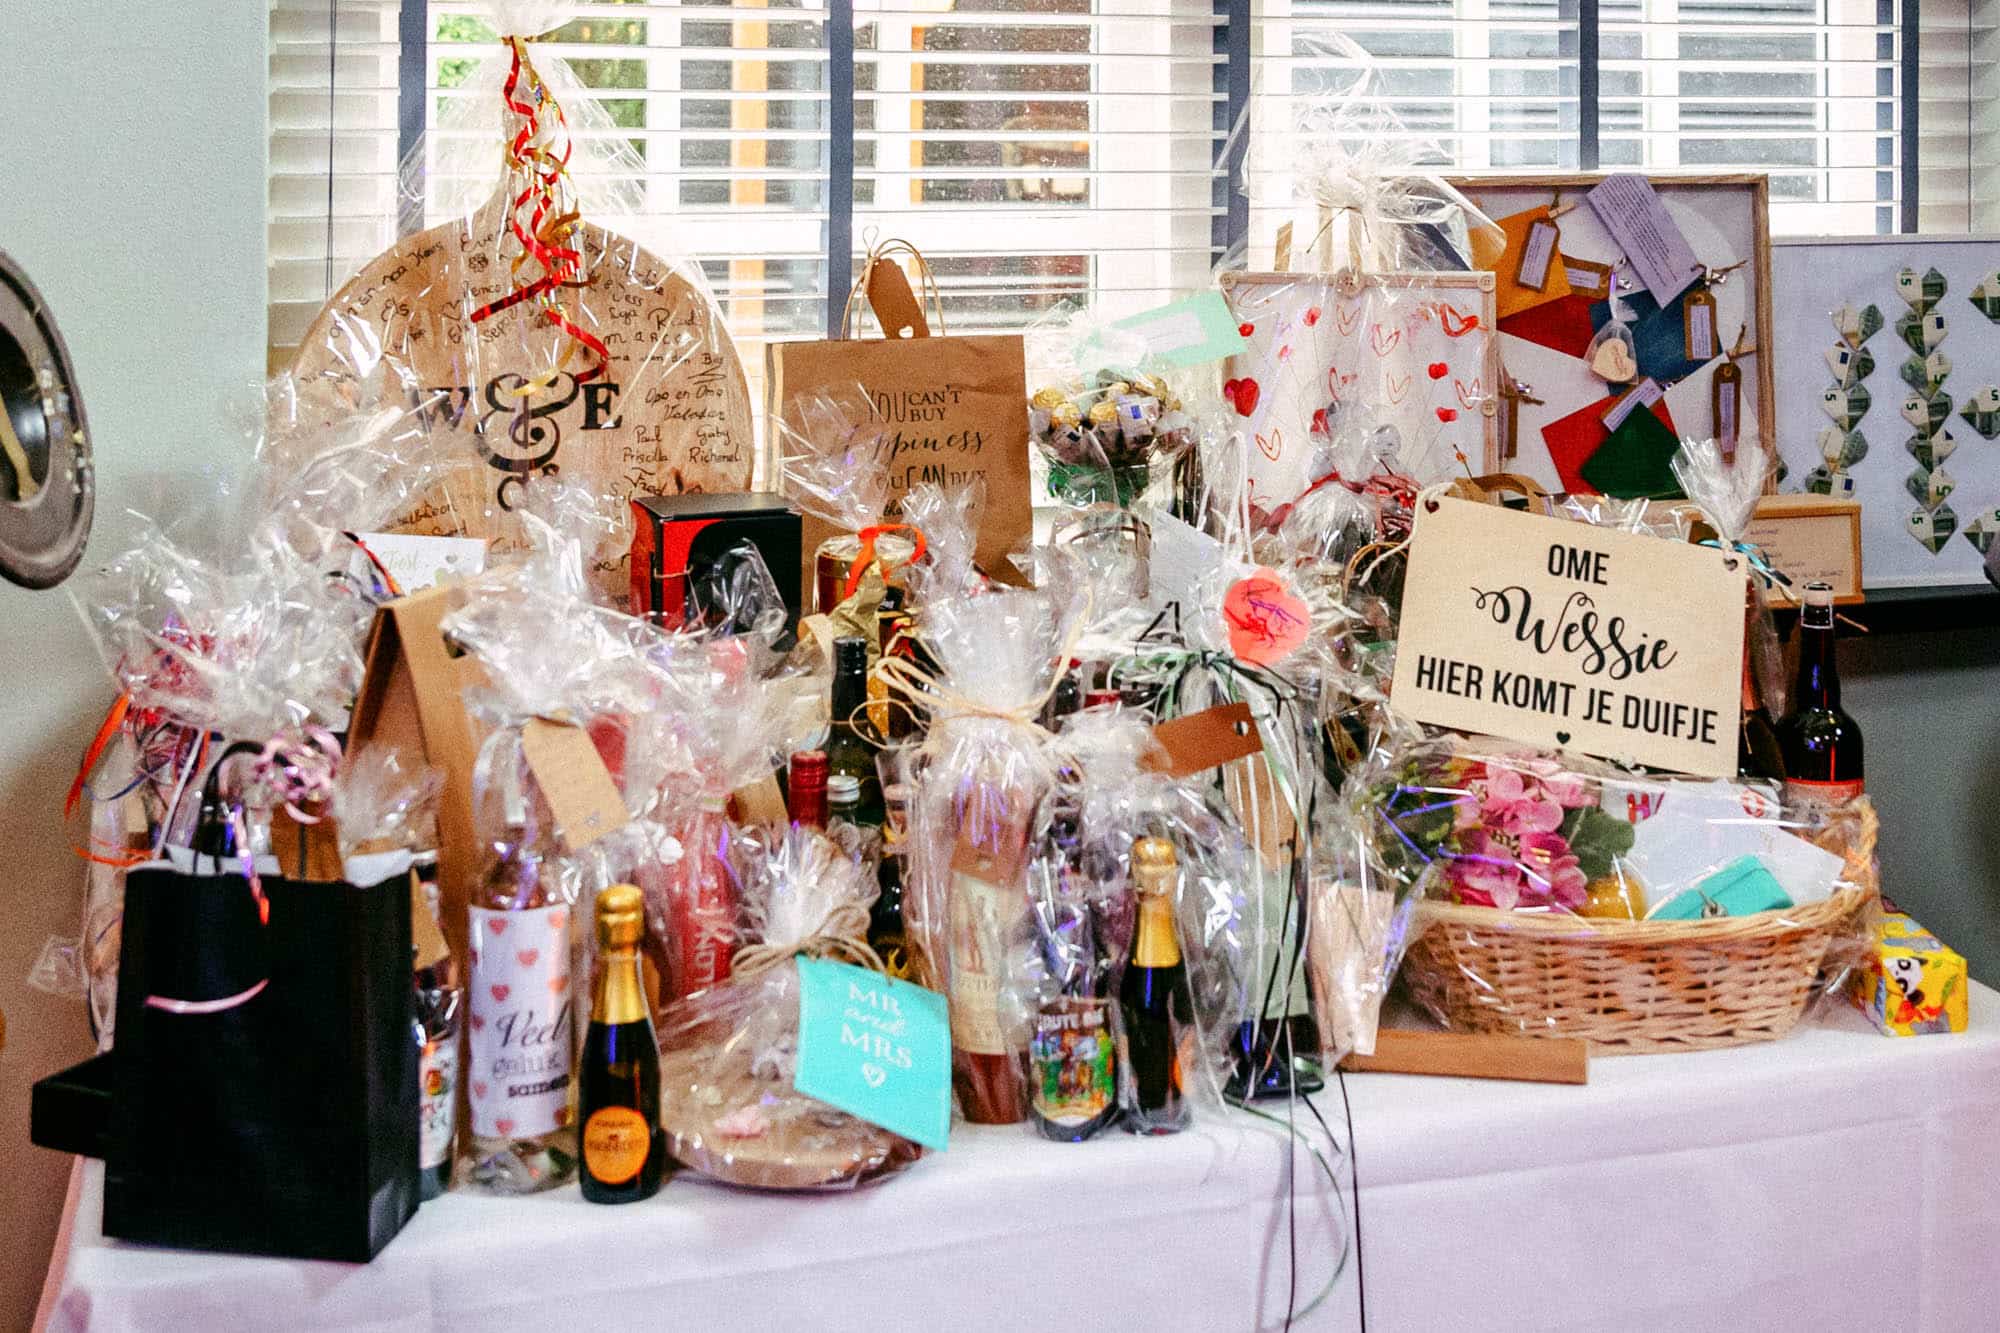 Een tafel met daarop een heleboel cadeauzakjes, met daarin diverse spullen voor een huwelijksfeest.